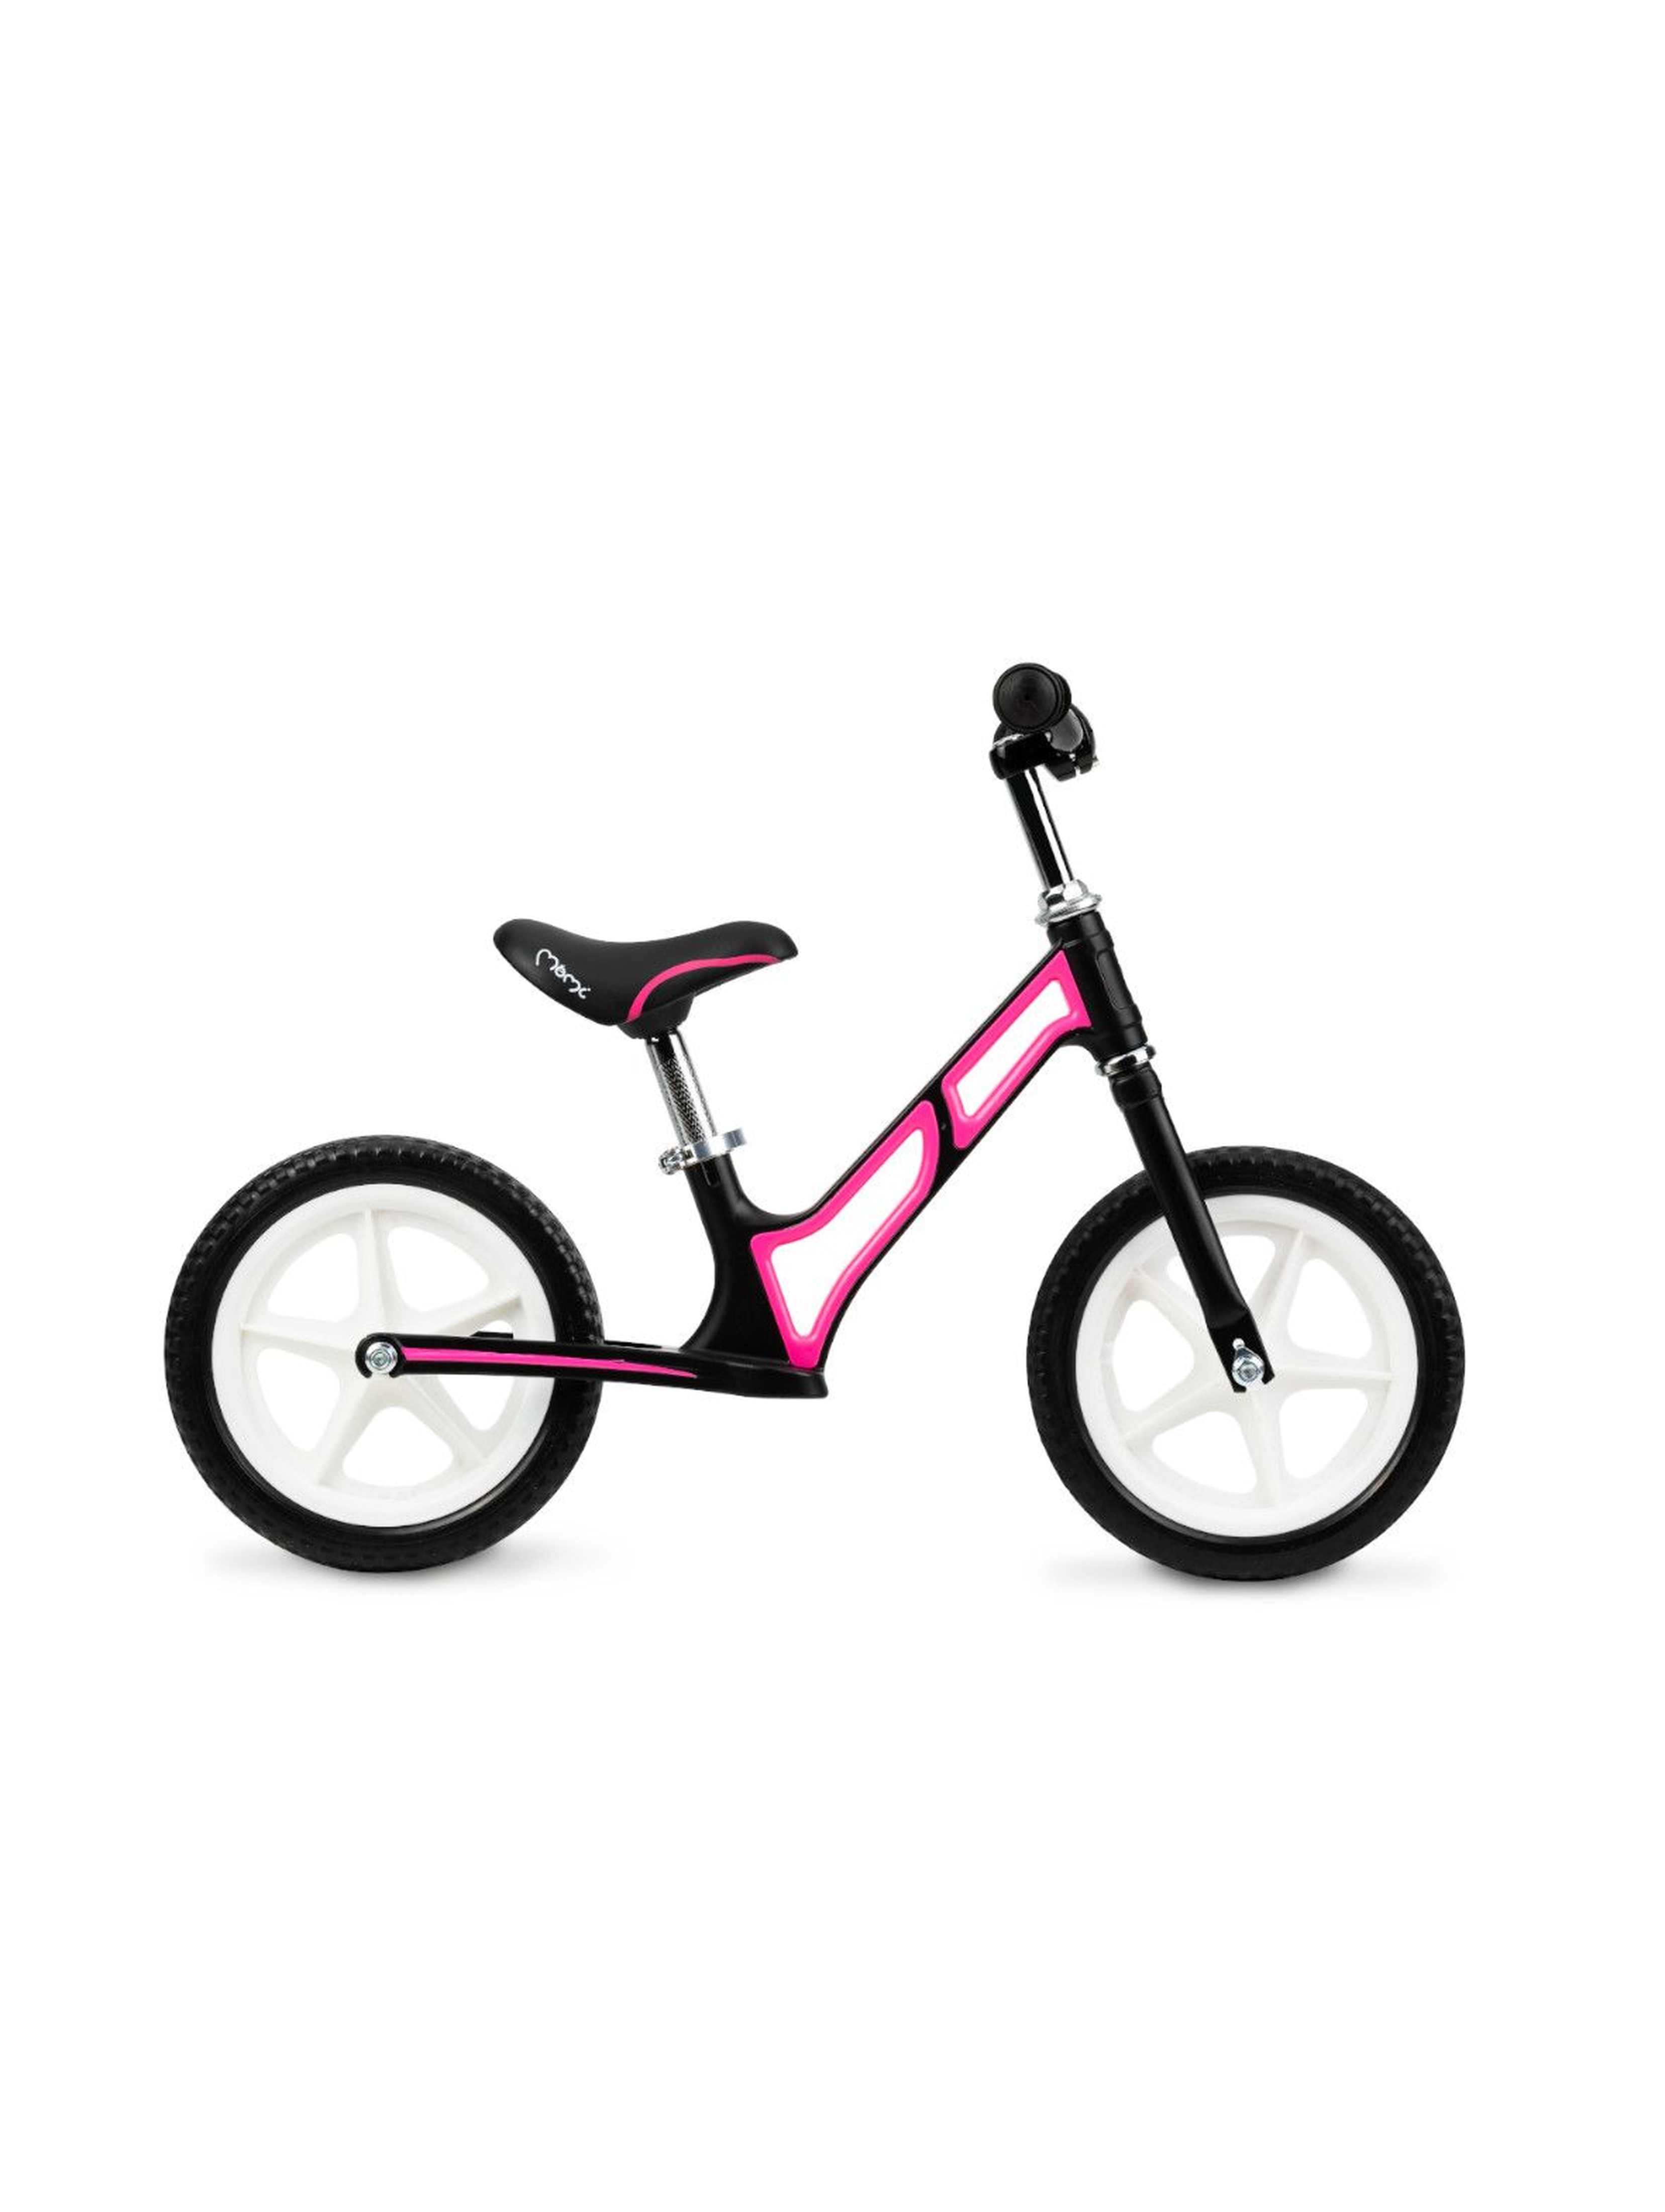 MoMi MOOV superlekki magnezowy rowerek biegowy różowy